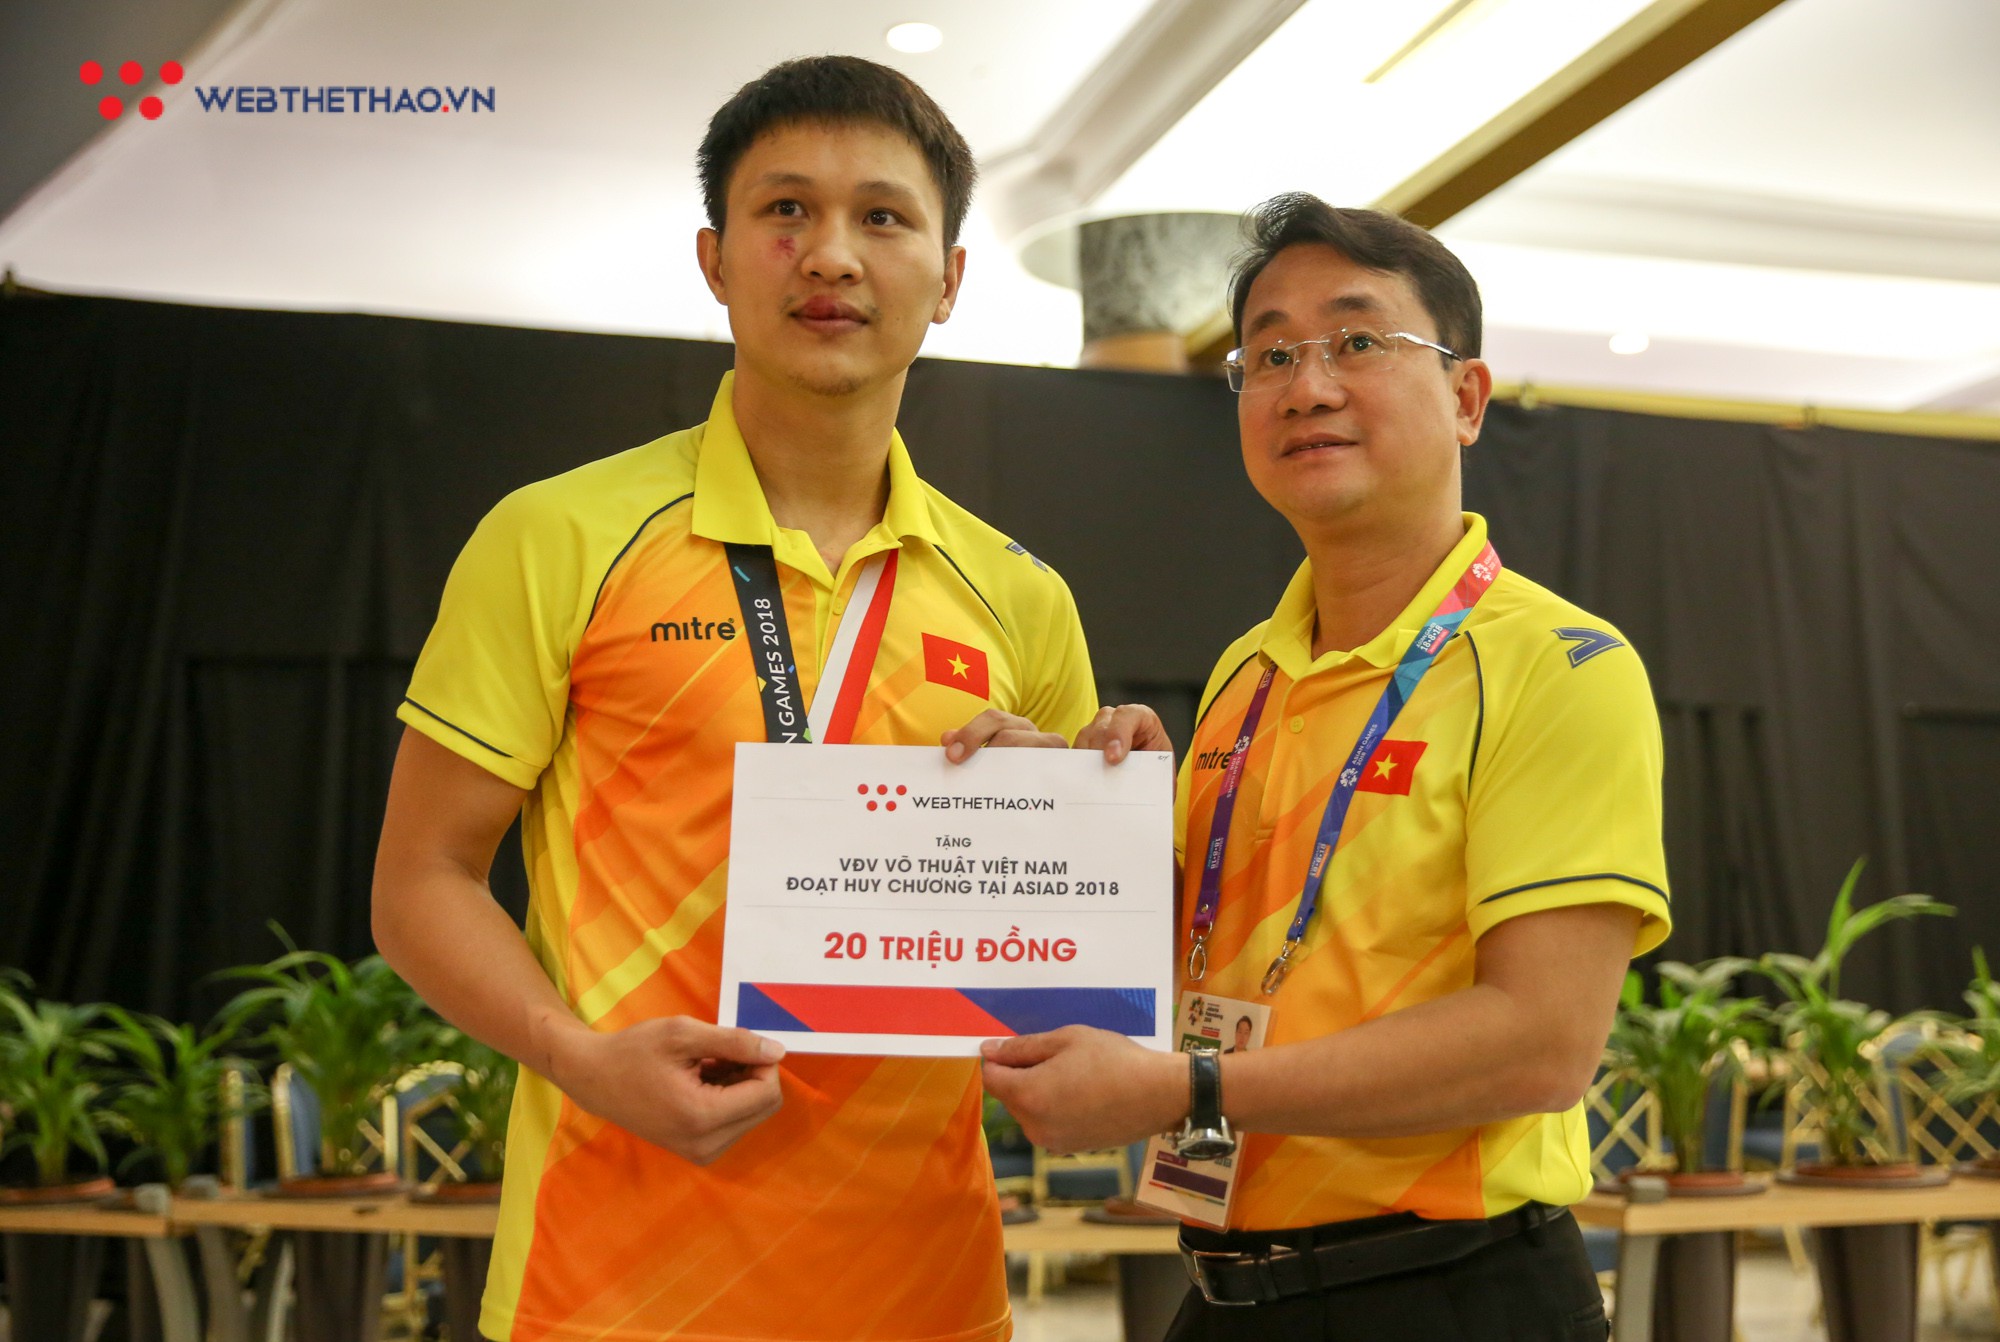 9 võ sĩ Pencak Silat Việt Nam đầu tiên tại ASIAD 2018 nhận thưởng từ Webthethao.vn - Ảnh 3.